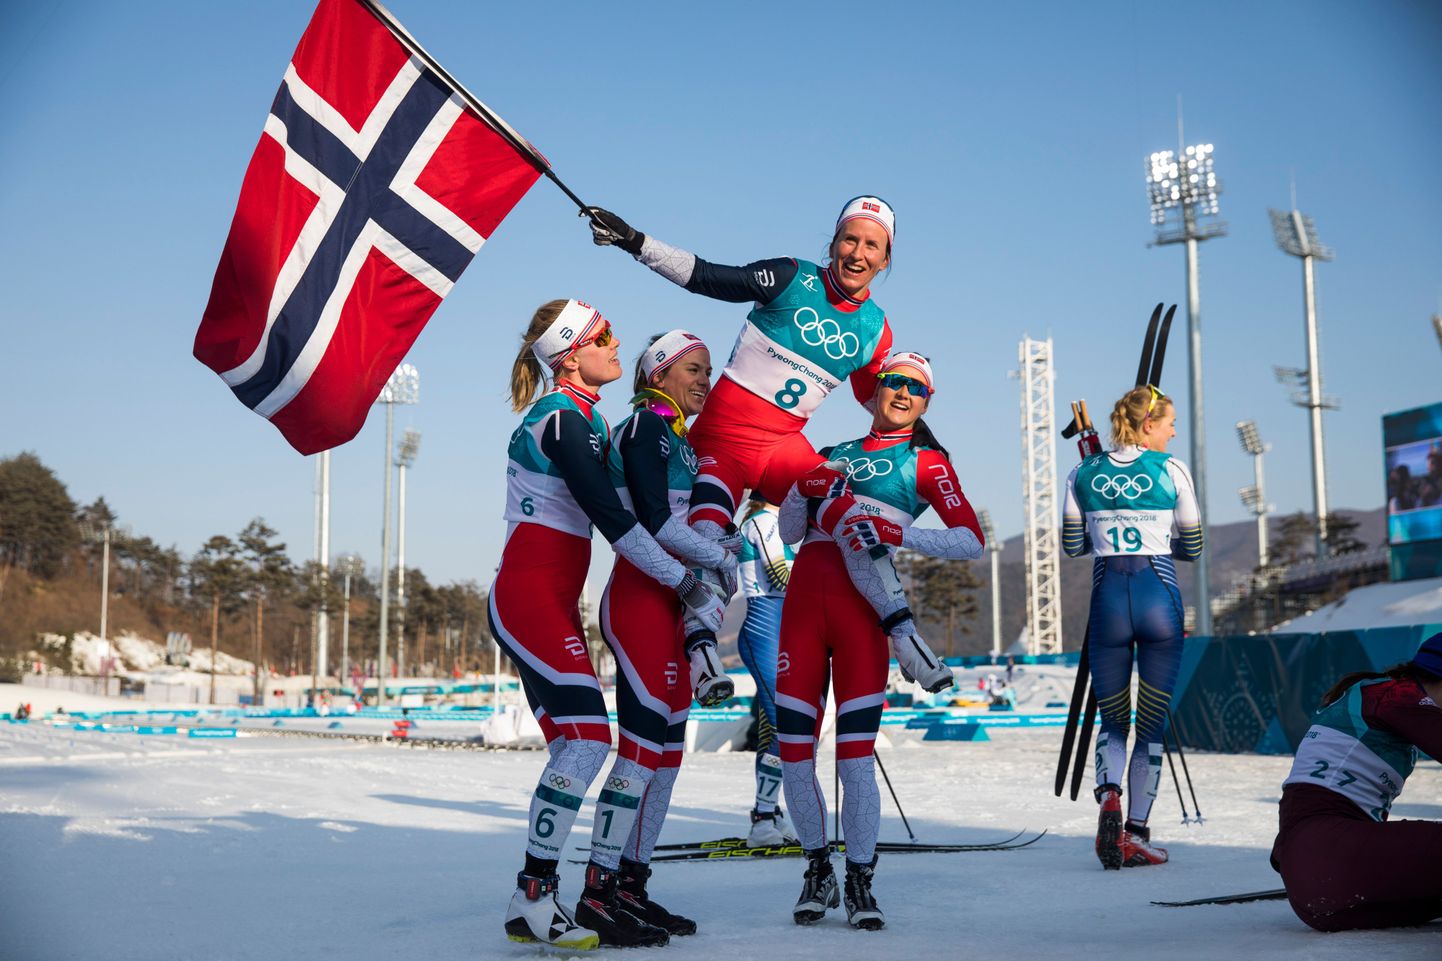 Norra murdmaasuusatajad 2018. aasta taliolümpial.